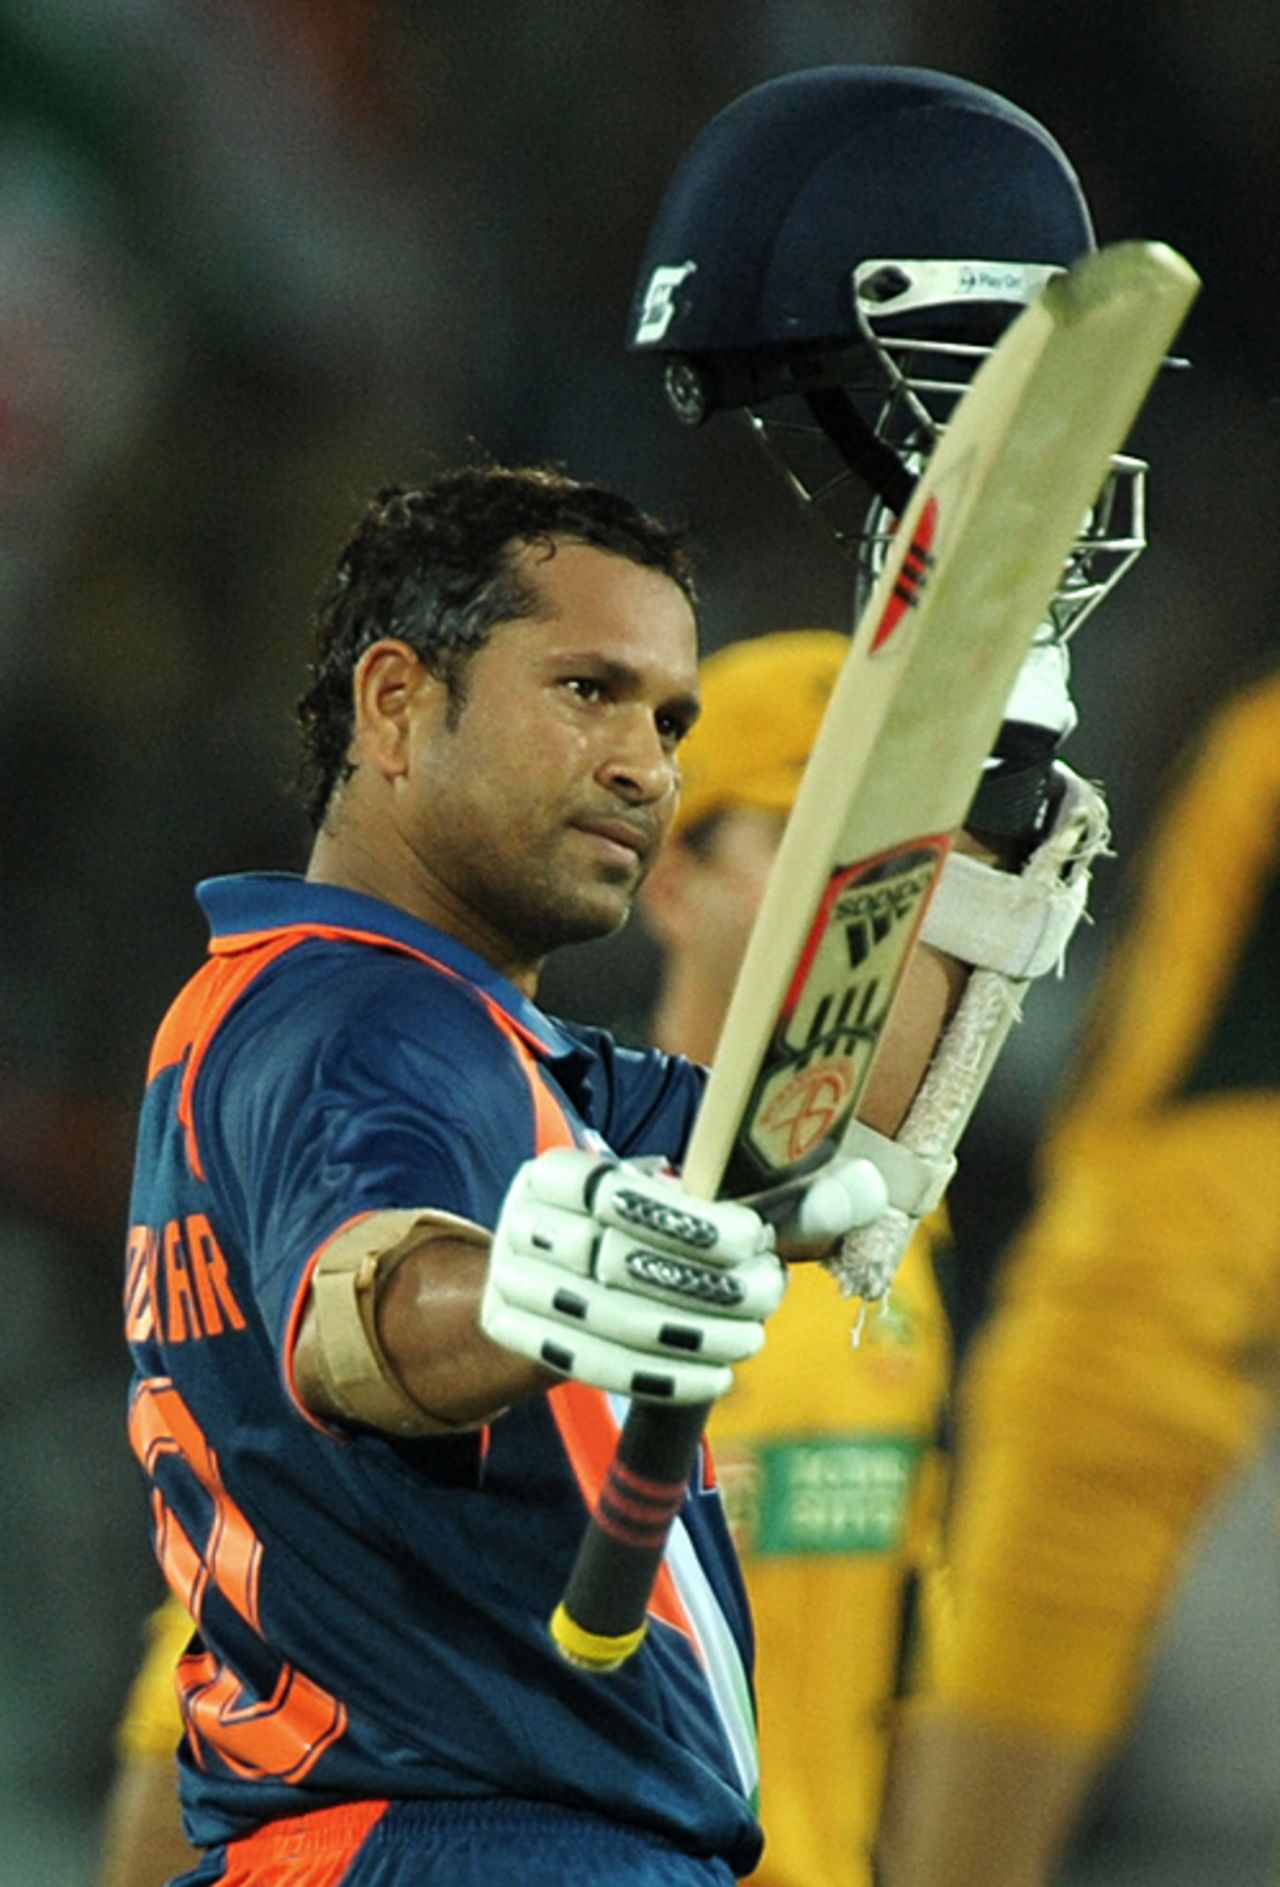 Sachin Tendulkar reaches his 45th ODI century, India v Australia, 5th ODI, Hyderabad, November 5, 2009